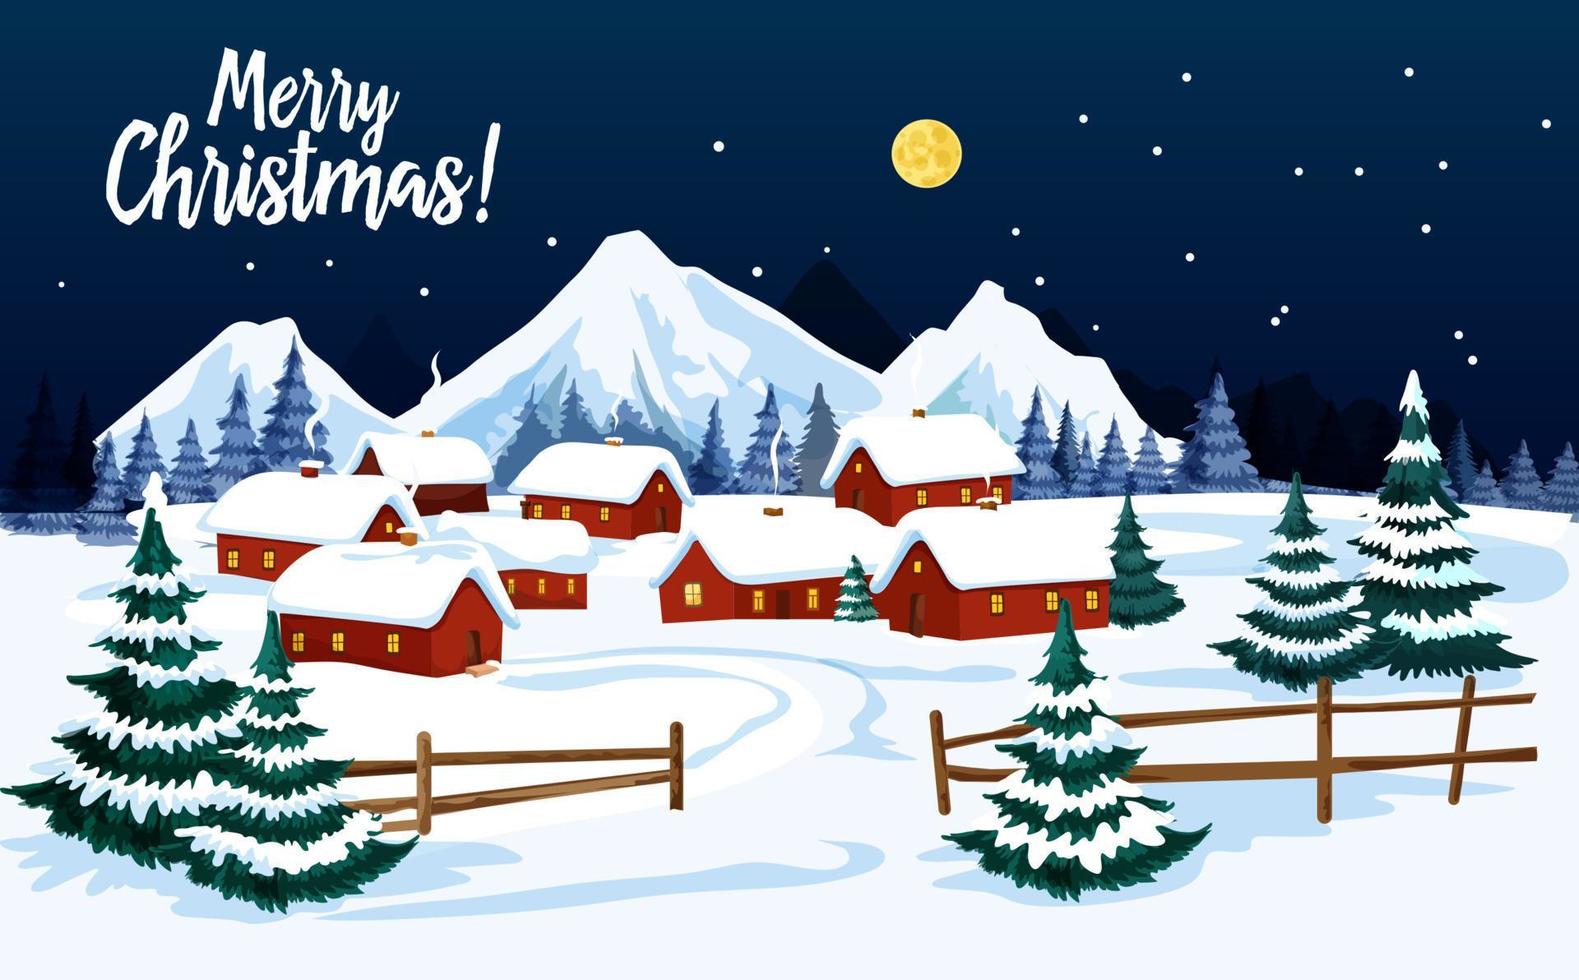 cartão de felicitações de paisagem de inverno de férias de natal vetor